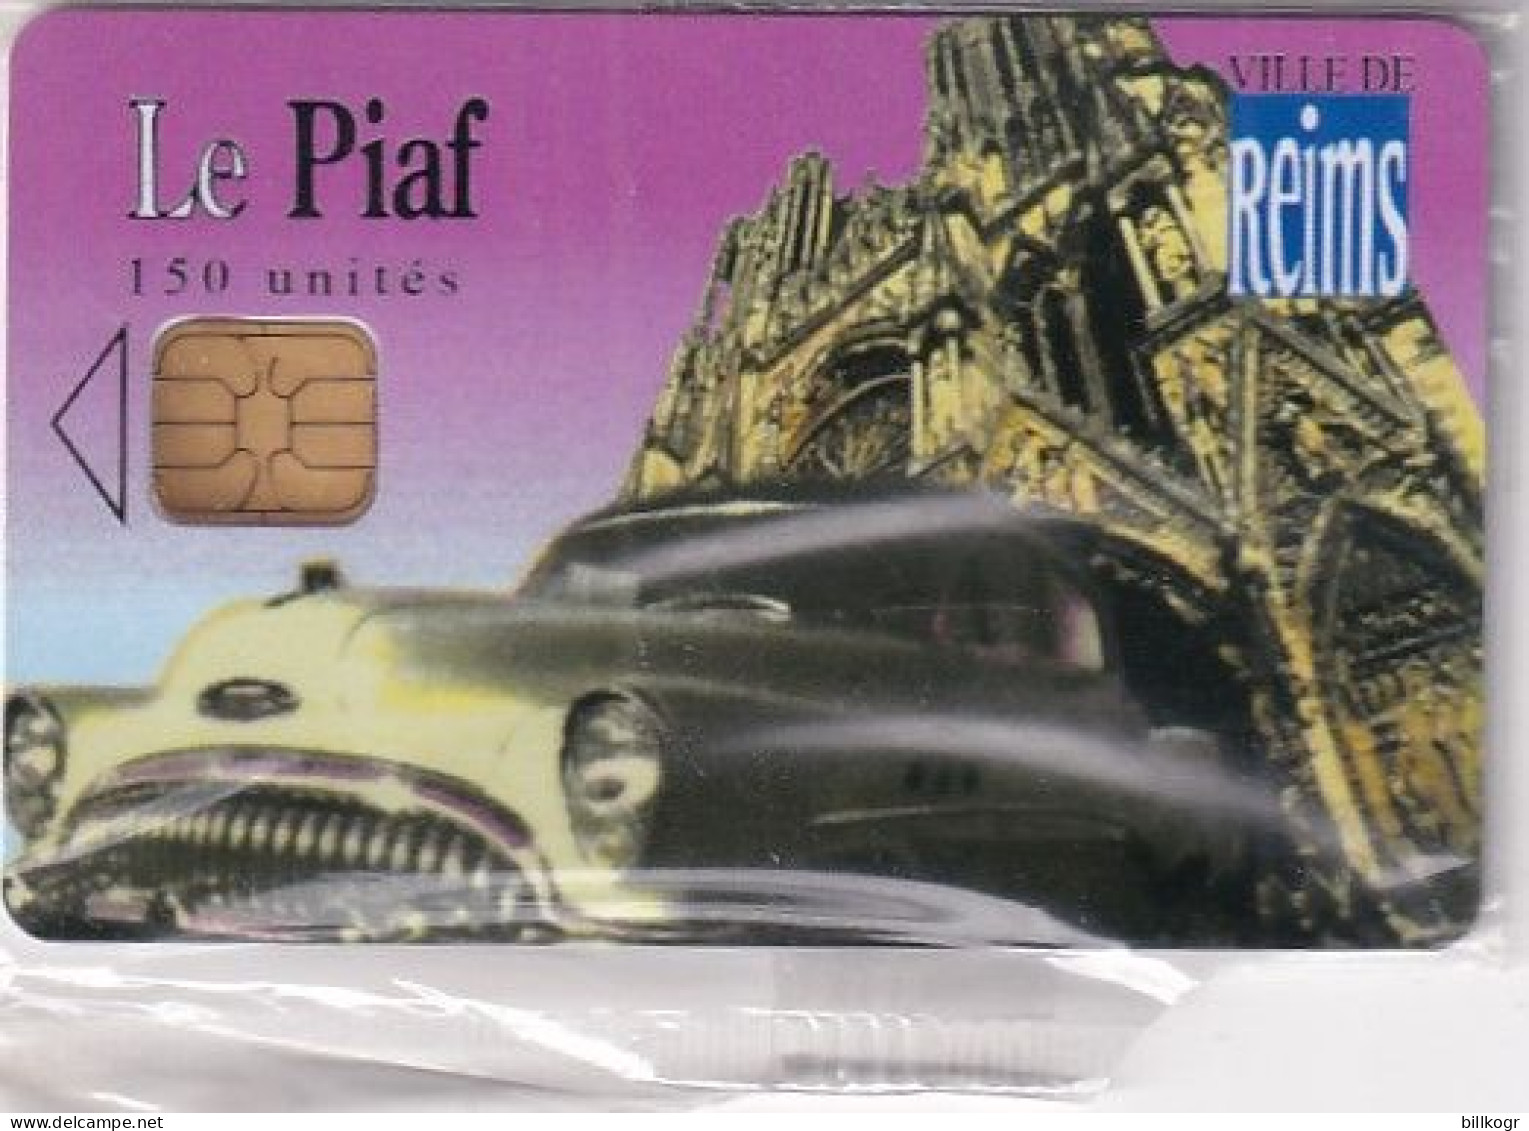 FRANCE - Le Piaf/Ville De Reims 150 Unites, Tirage 2900, 07/06, Mint - Parkkarten